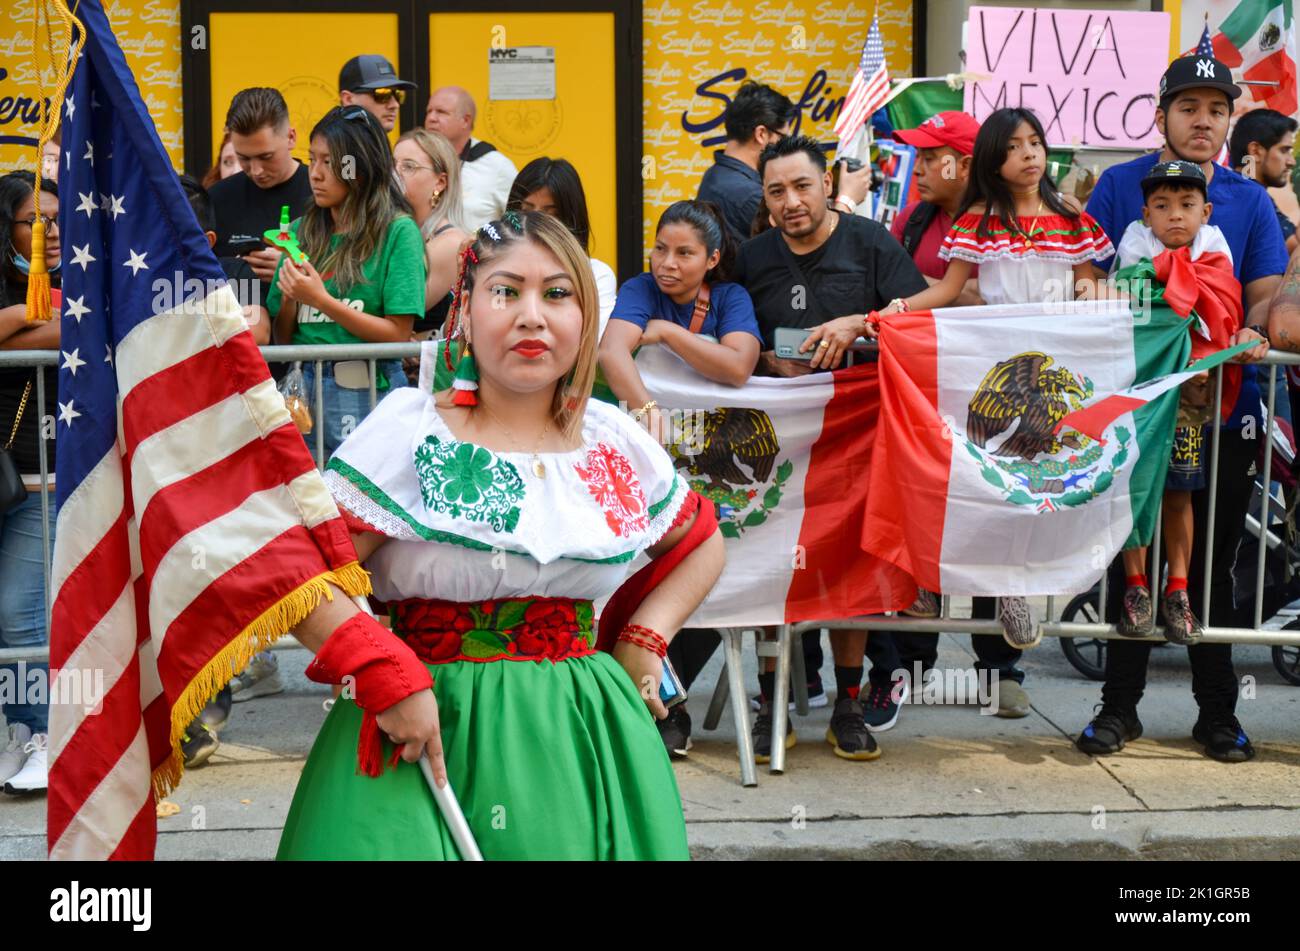 Le participant au défilé porte le costume mexicain traditionnel et porte le drapeau américain lors de la parade annuelle de la fête mexicaine le long de Madison Avenue à New Yor Banque D'Images